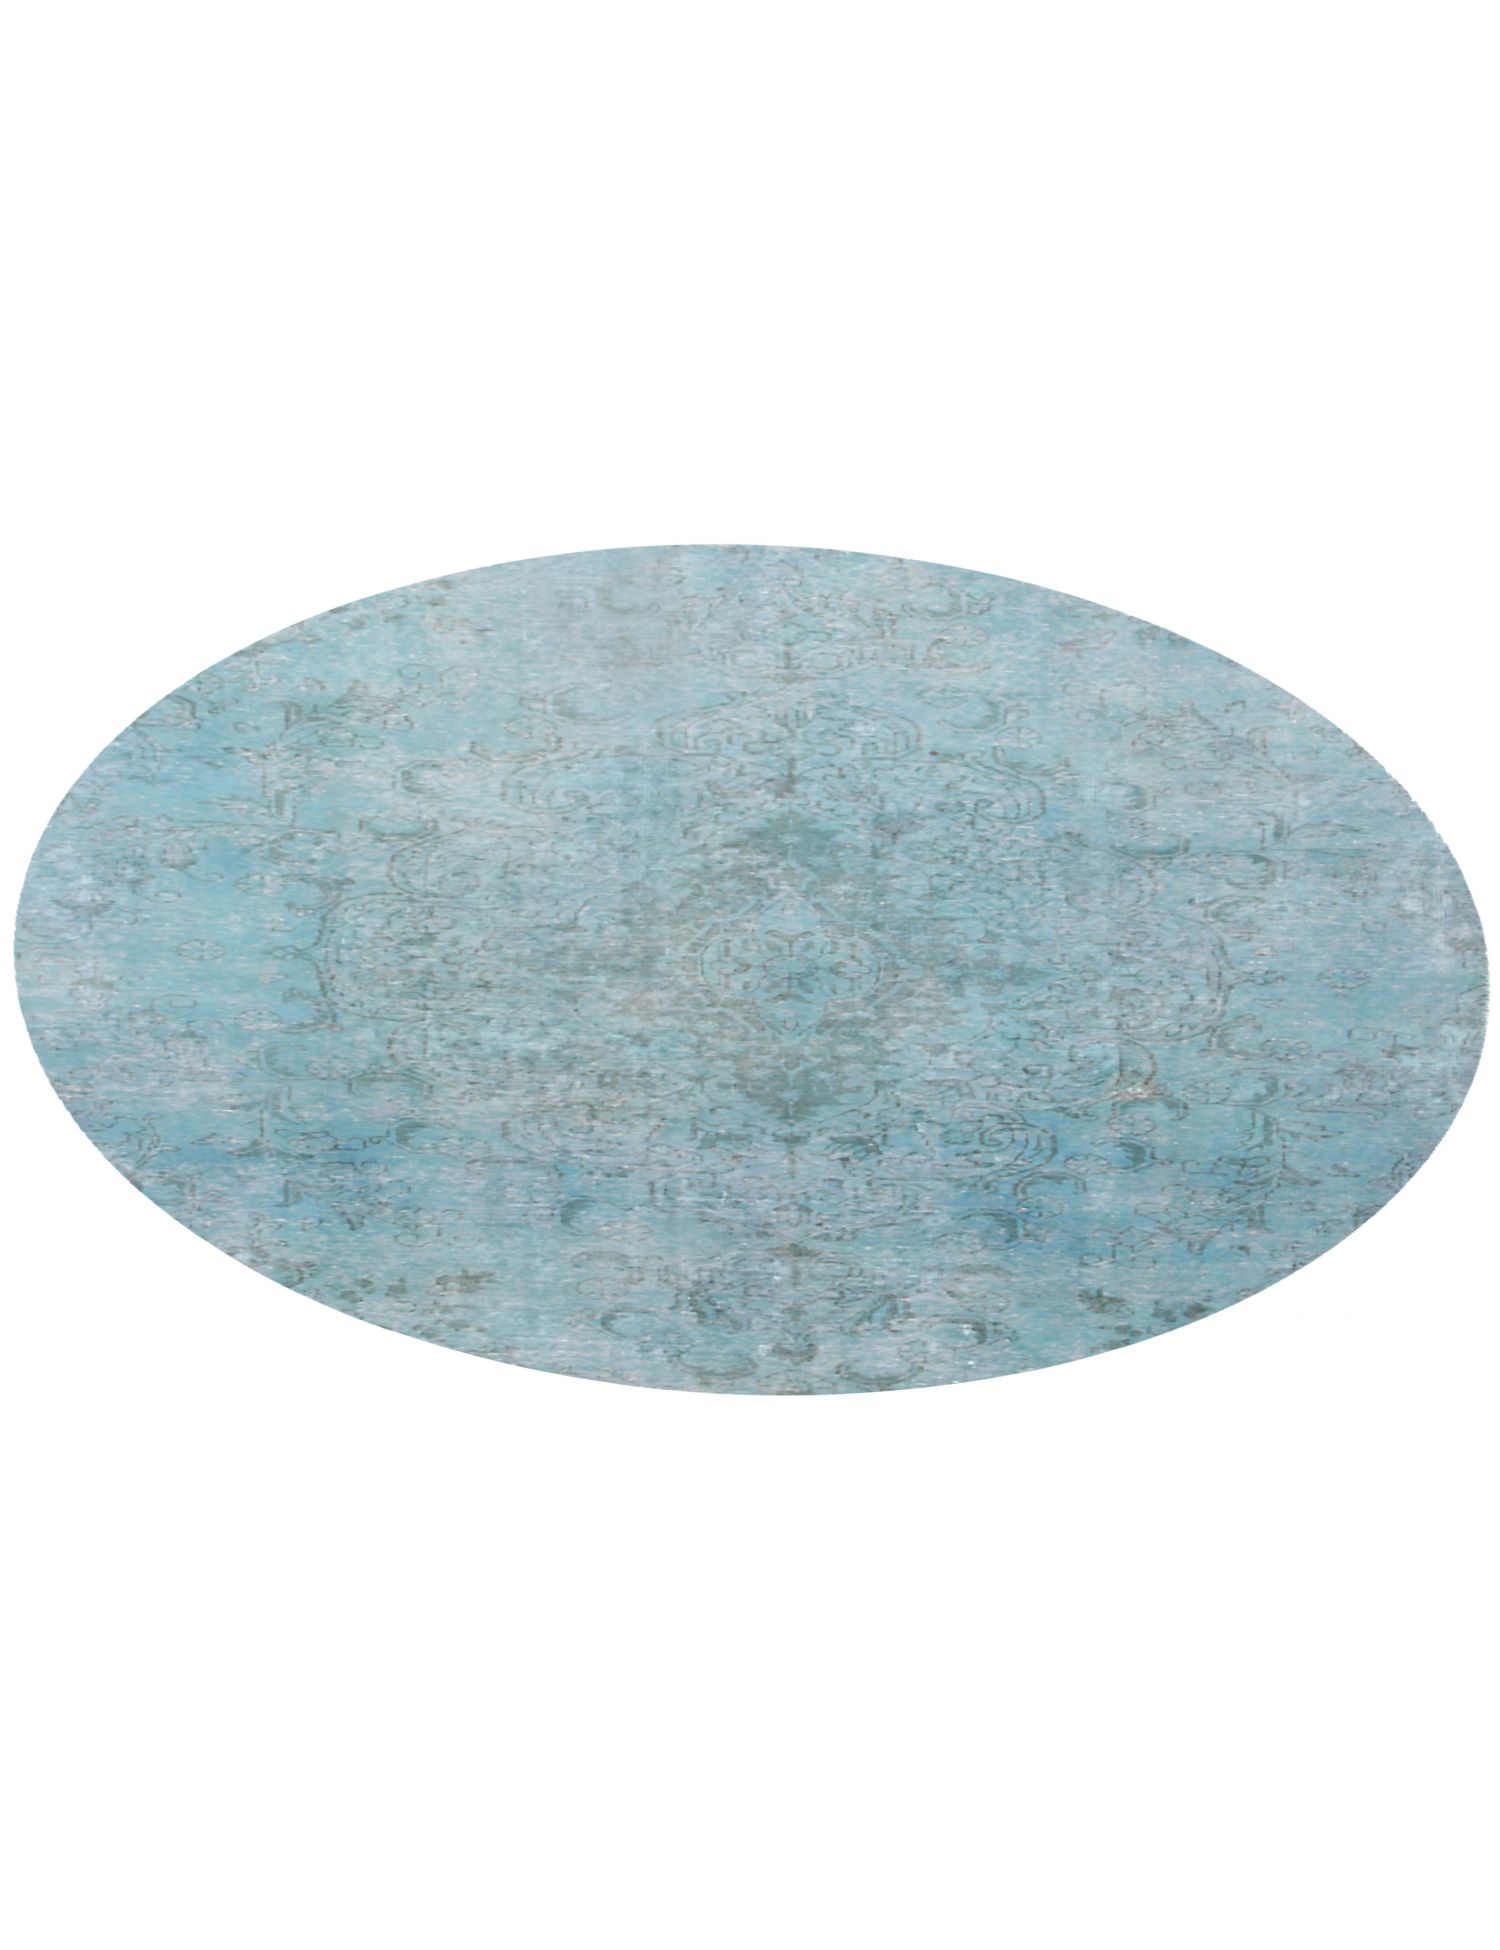 Rund  Vintage Teppich  blau <br/>180 x 180 cm